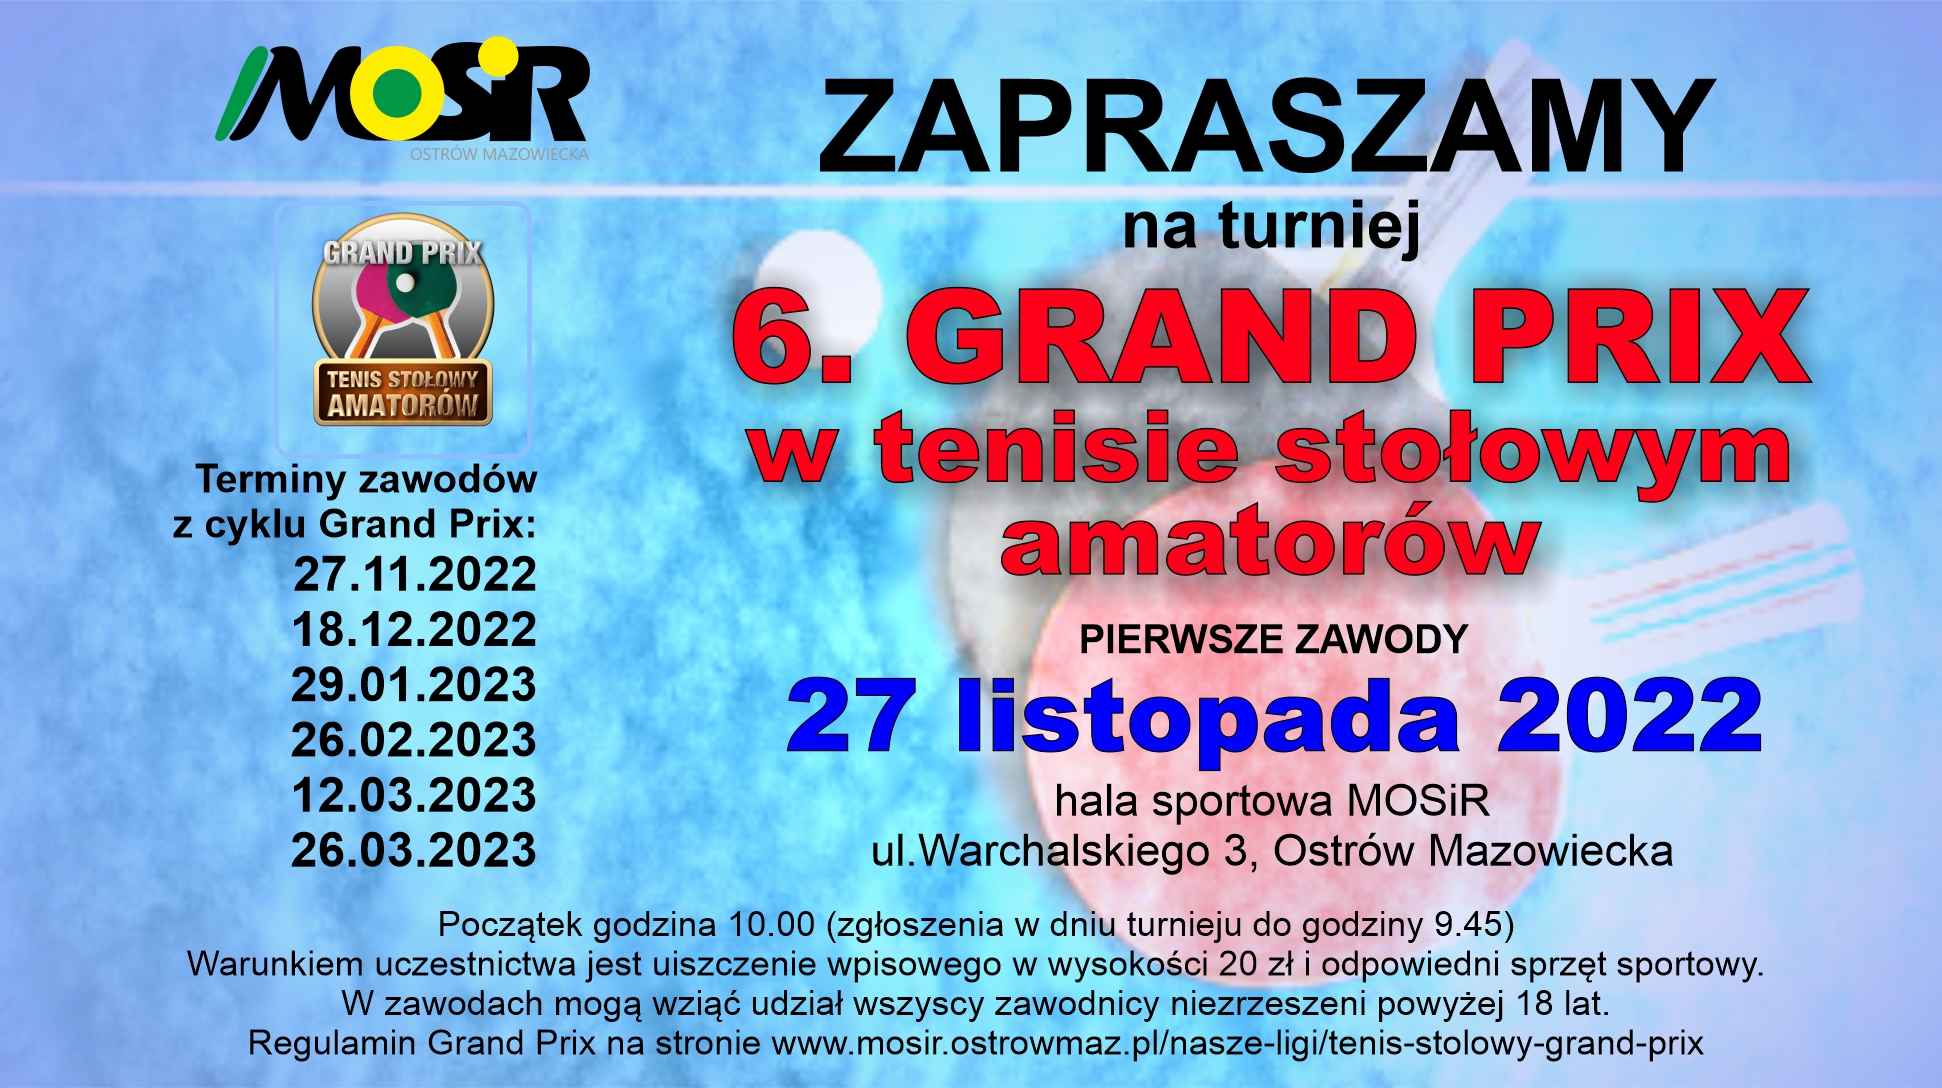 Plakat turnieju 6. turniej Grand Prix w tensie stołowym amatorów Ostrów Mazowiecka - termin 3